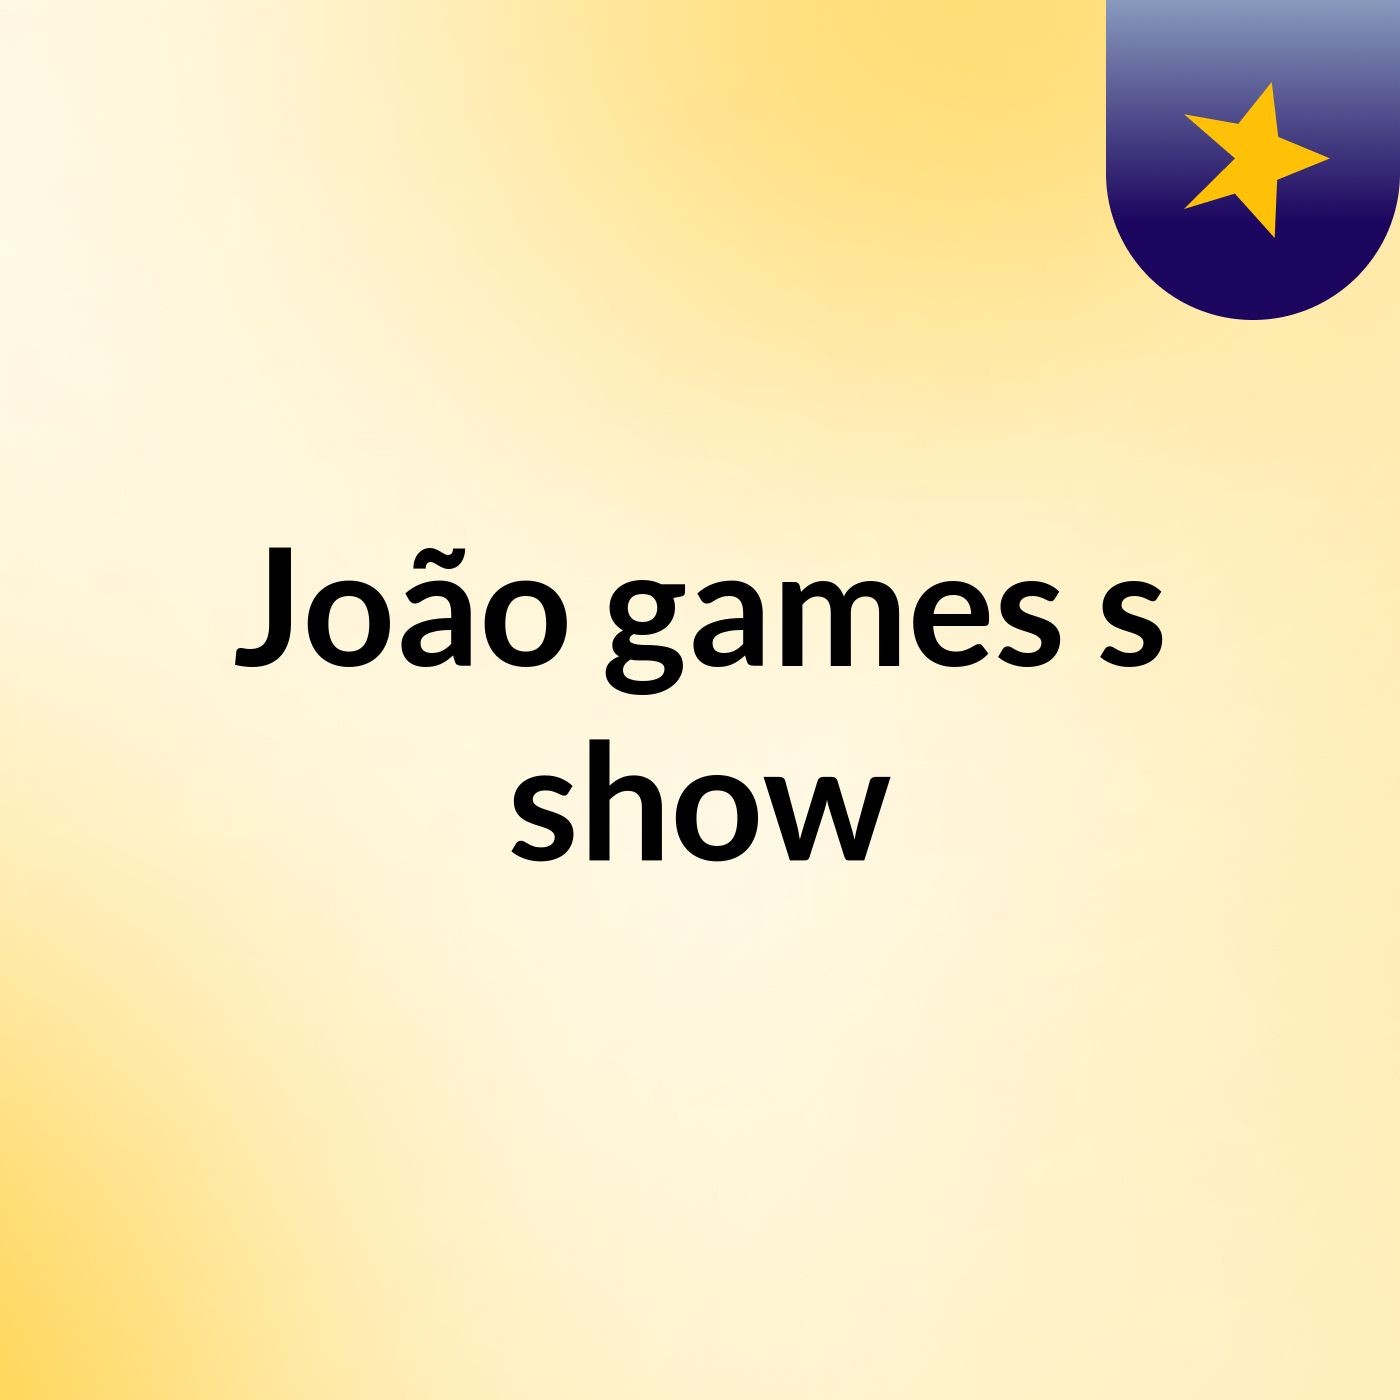 João games's show